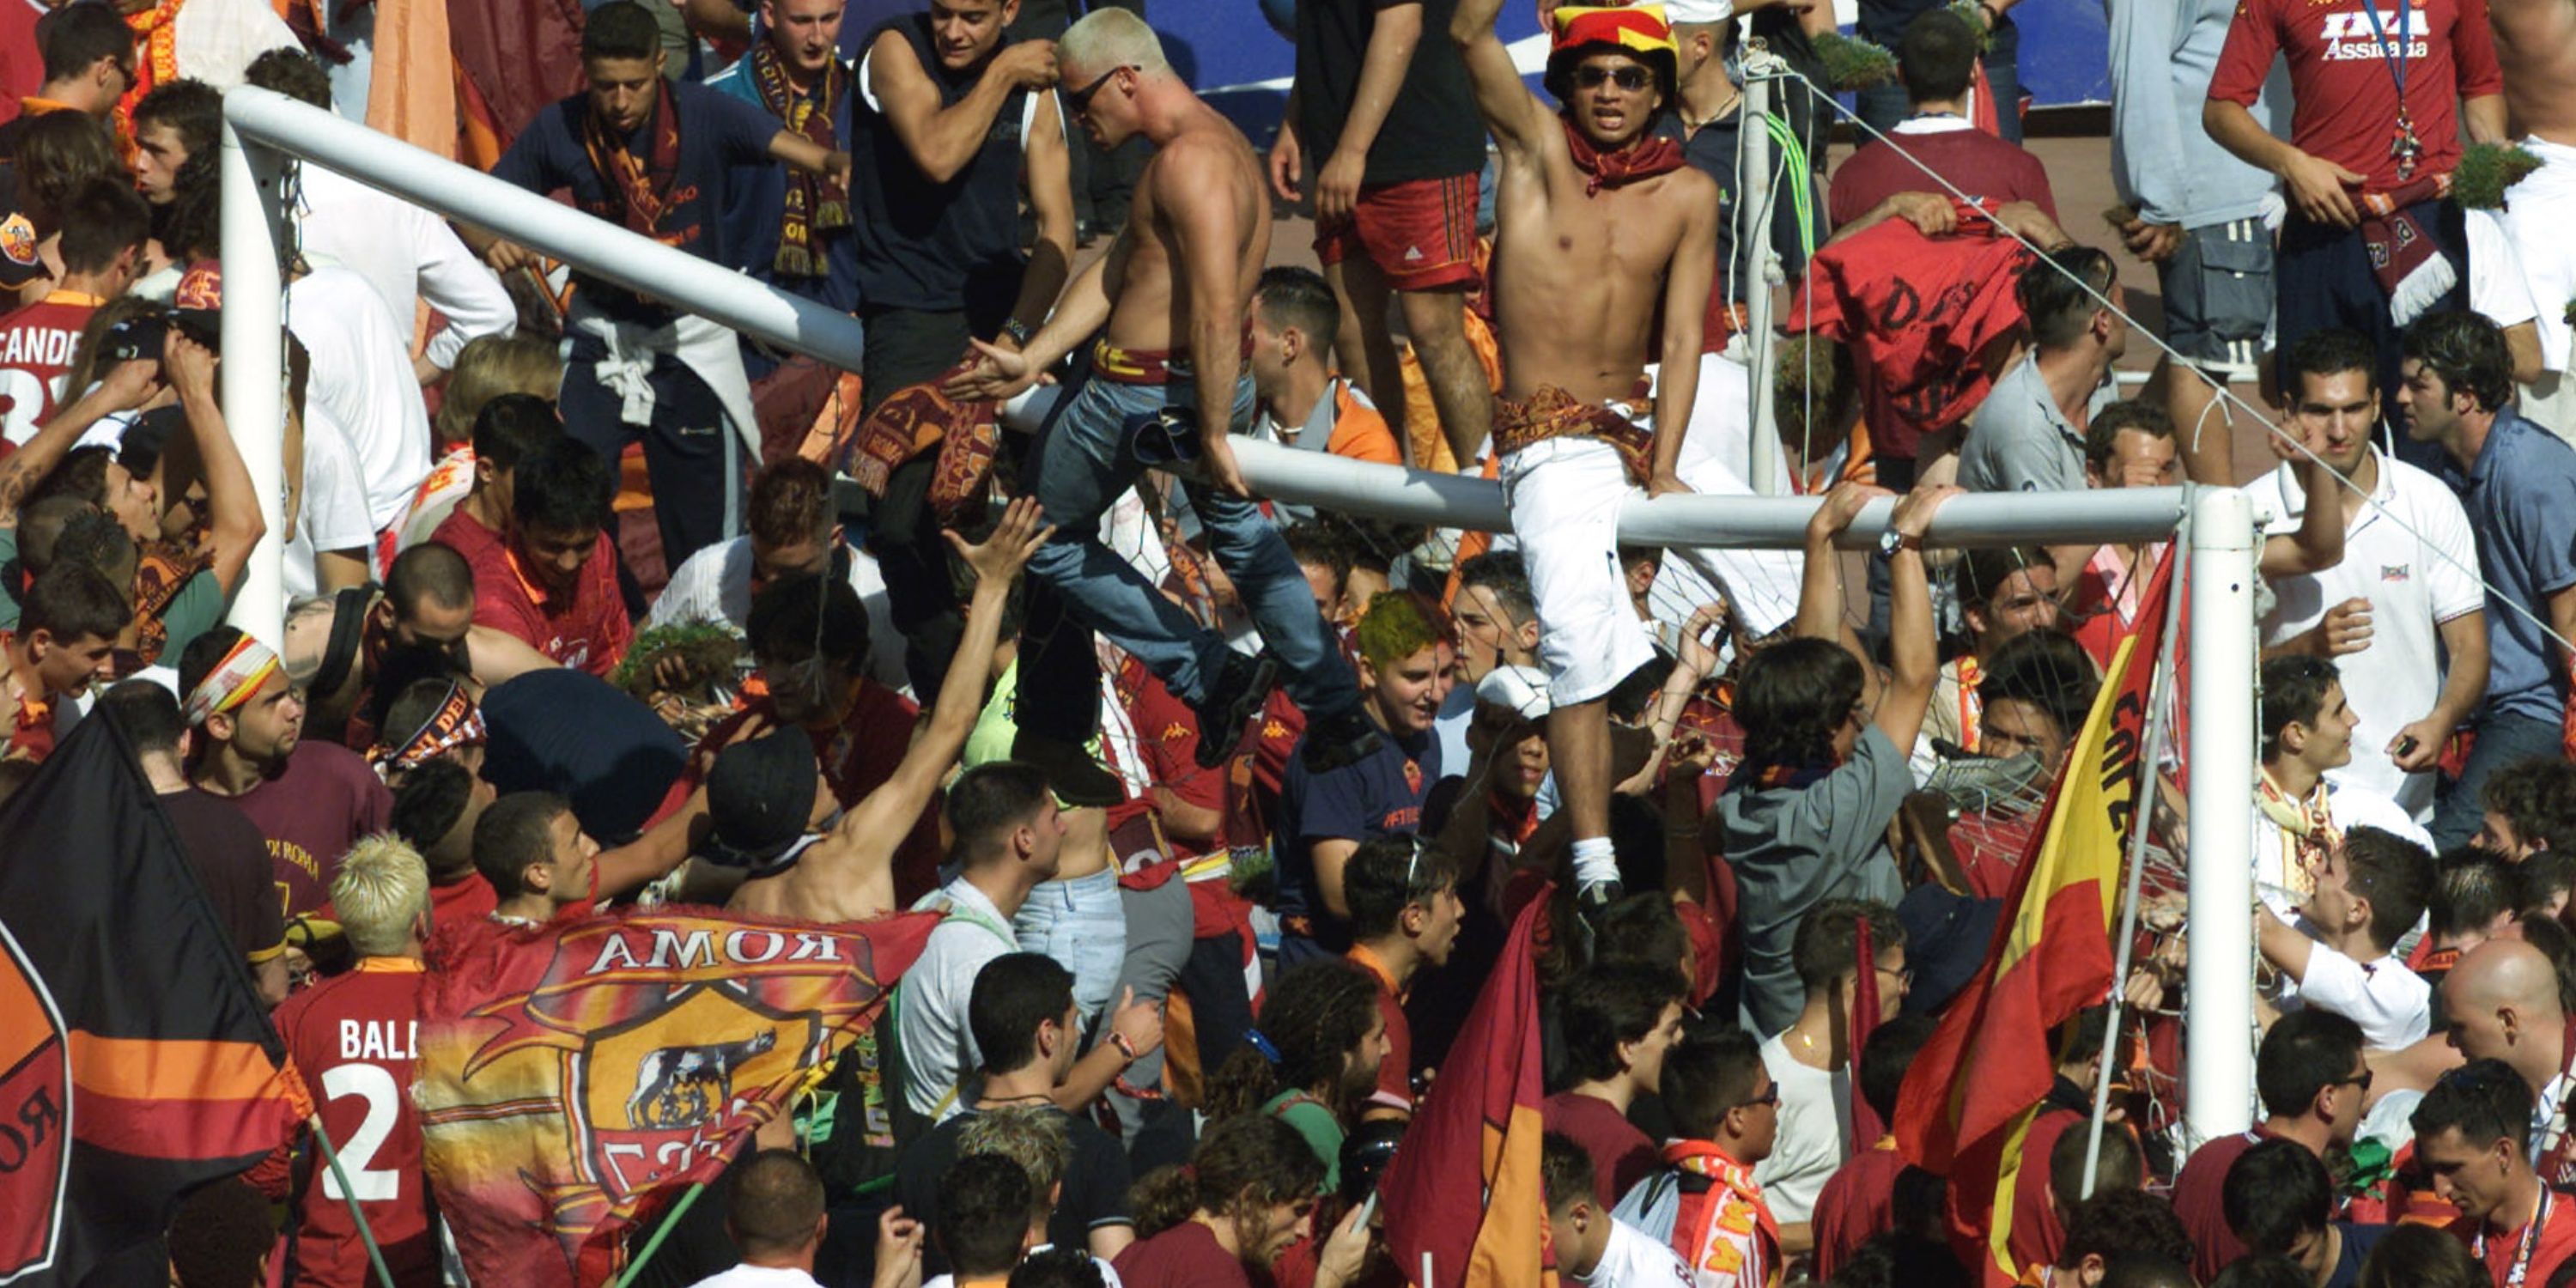 Roma fans celebrate winning Serie A in 2001.